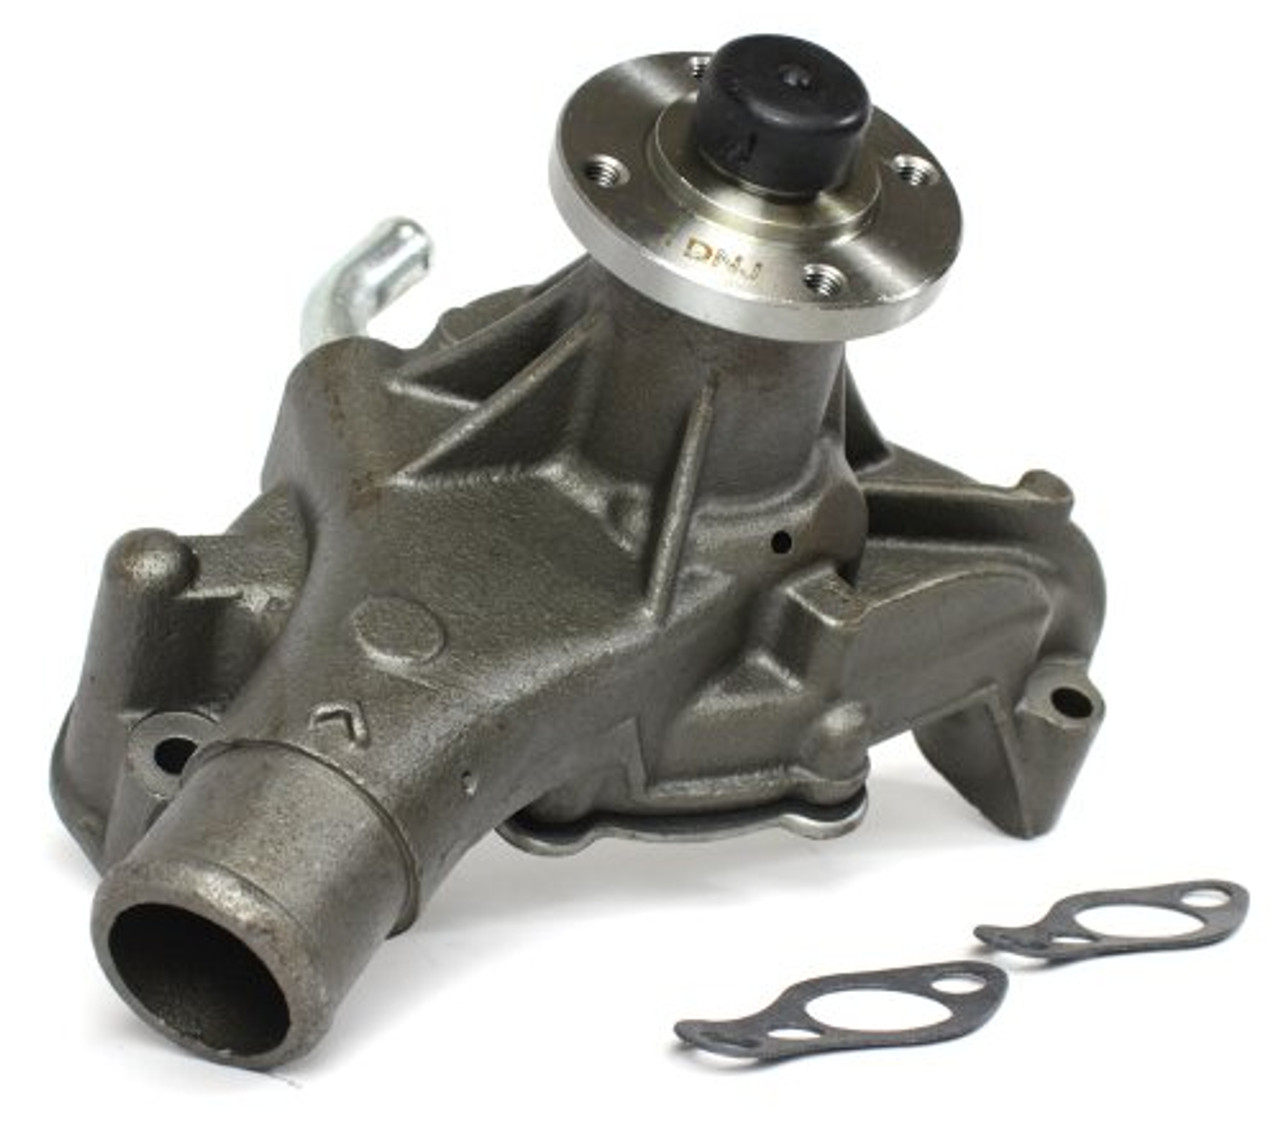 Water Pump - 2002 Chevrolet Silverado 1500 4.3L Engine Parts # WP3104ZE173